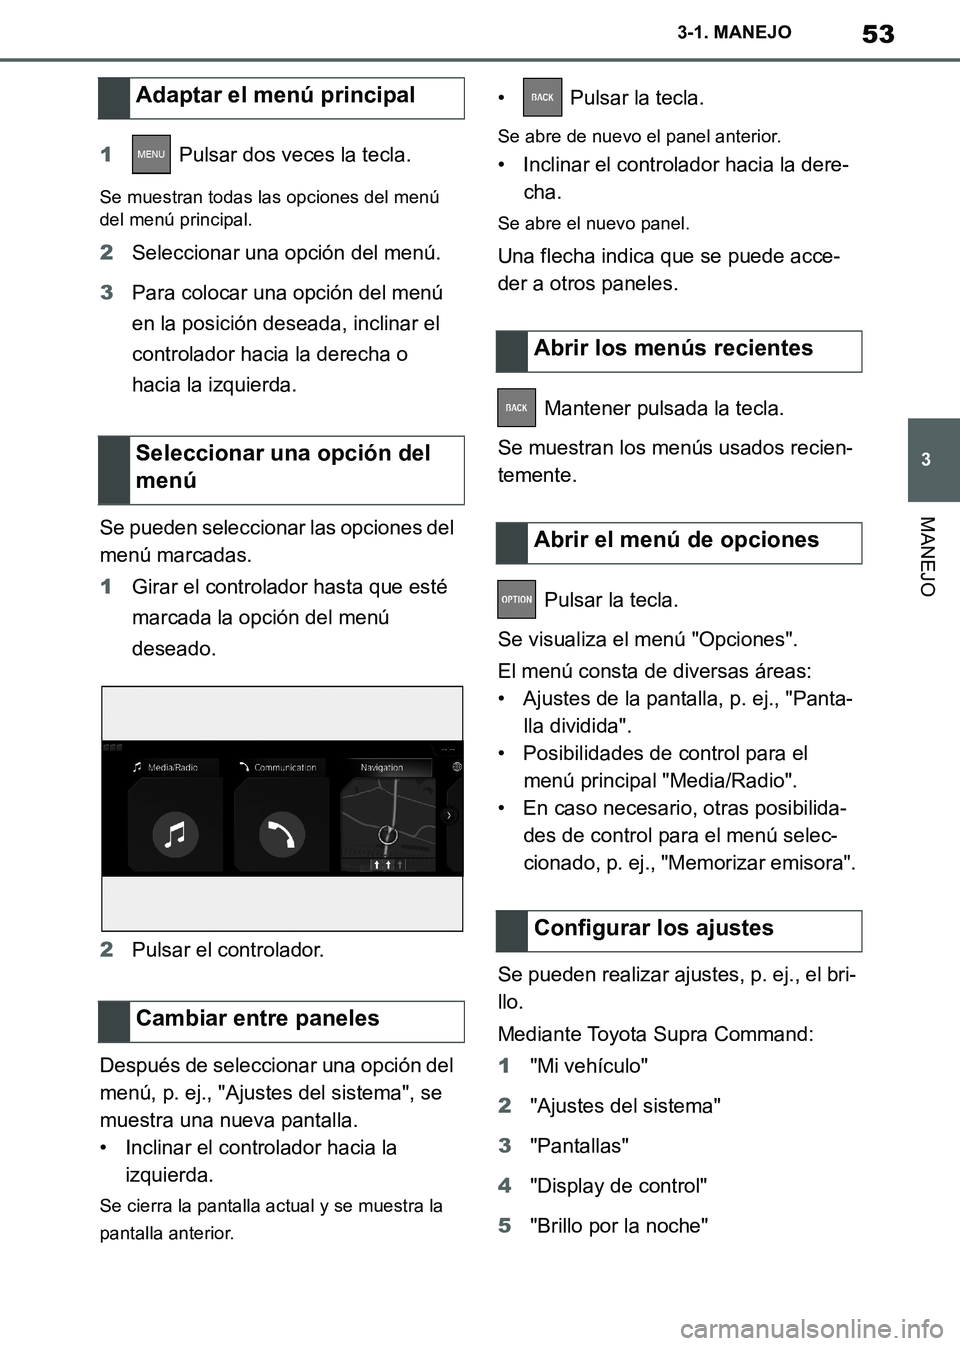 TOYOTA SUPRA 2019  Manuale de Empleo (in Spanish) 53
3
Supra Owners Manual_ES
3-1. MANEJO
MANEJO
1 Pulsar dos veces la tecla.
Se muestran todas las opciones del menú 
del menú principal.
2Seleccionar una opción del menú.
3Para colocar una opció